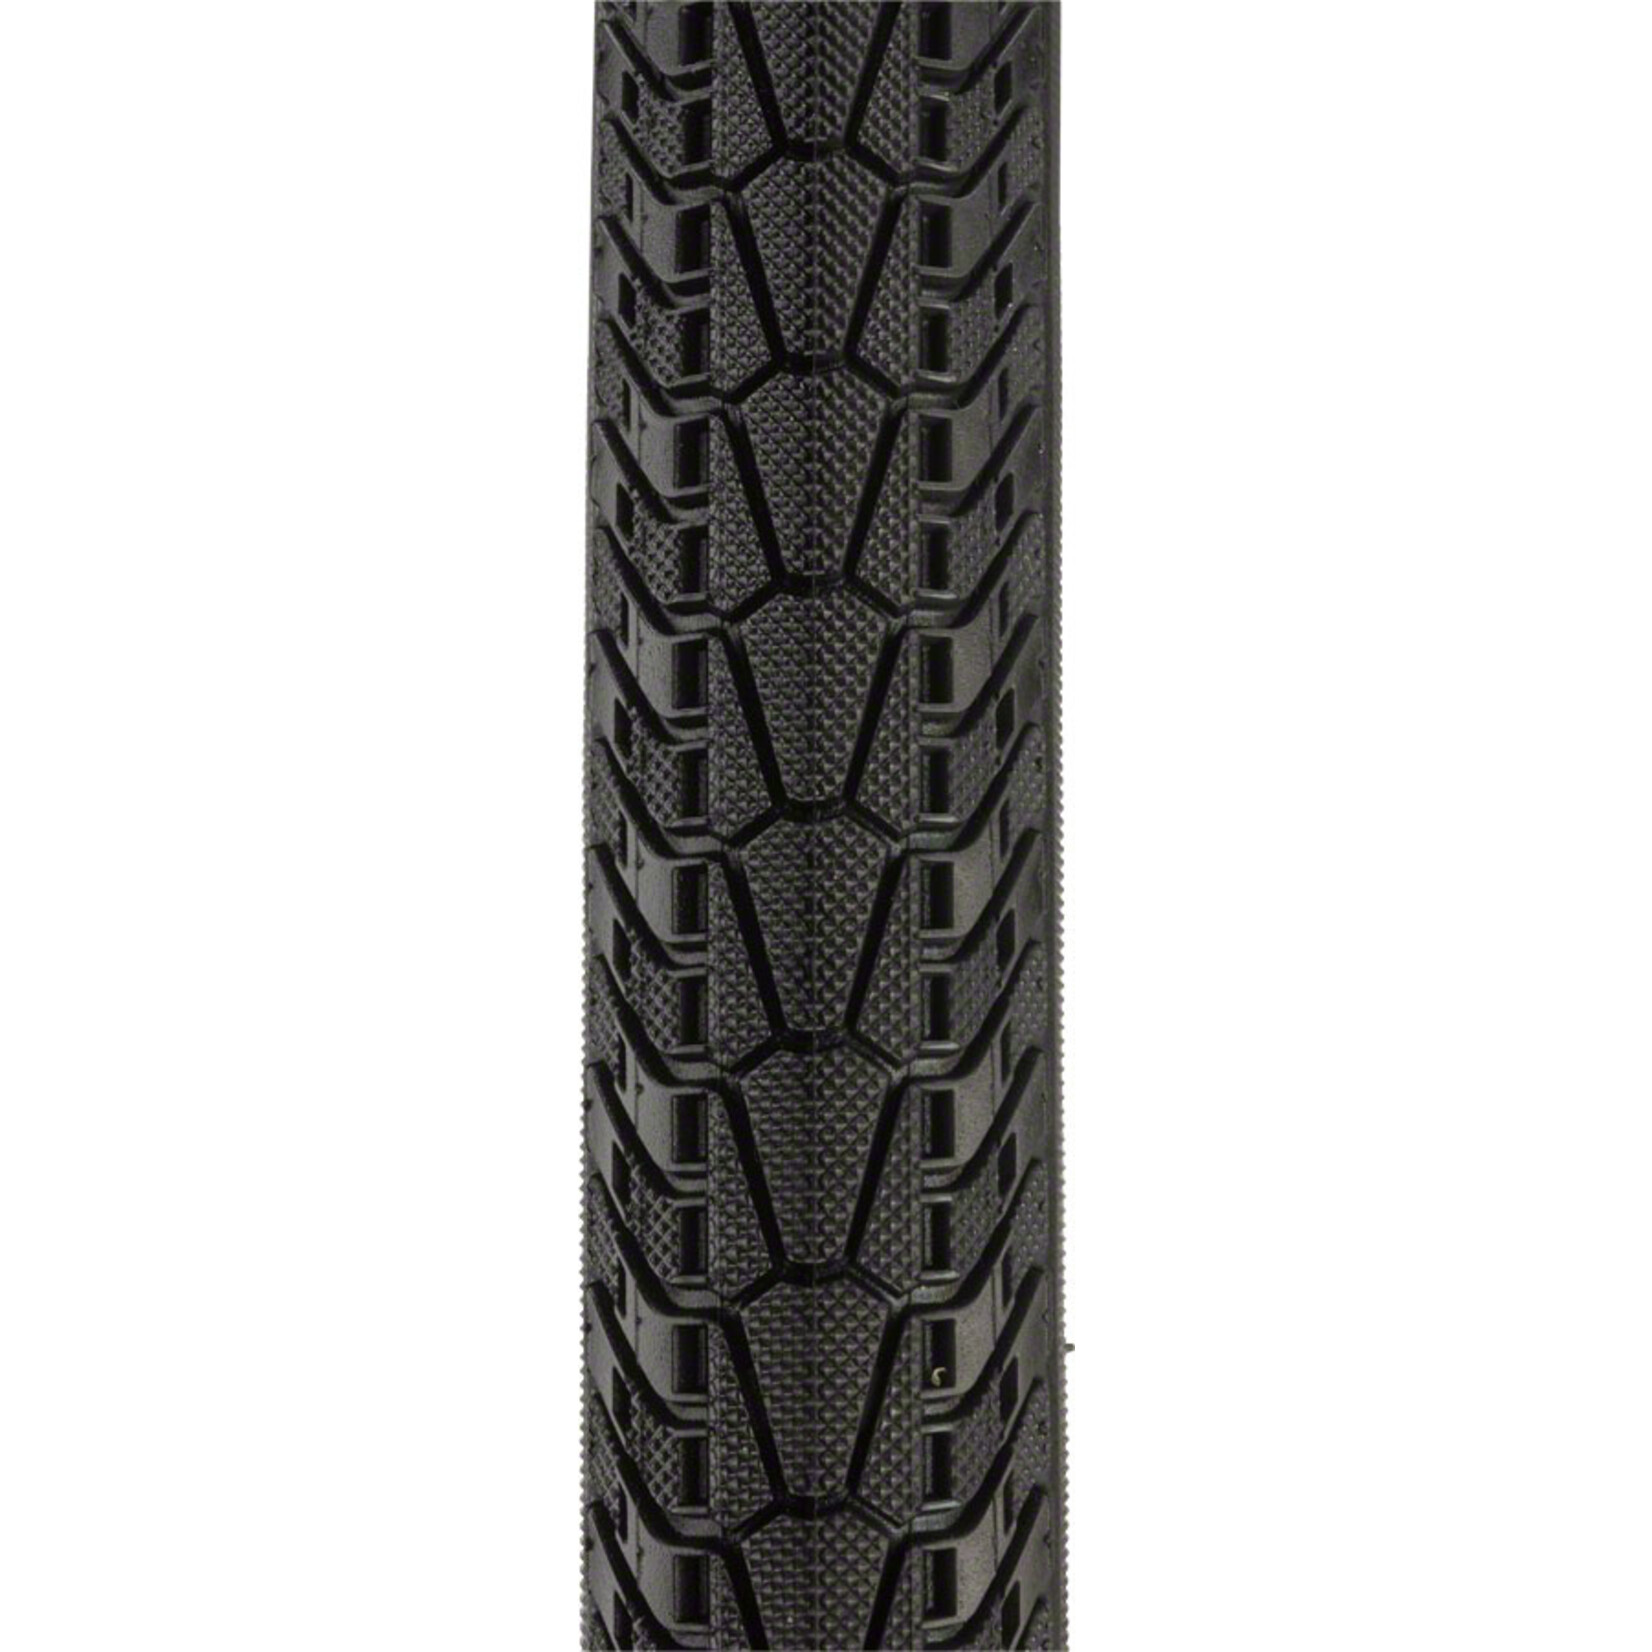 panaracer Panaracer T-Serv Protite Tire - 26 x 1.5, Clincher, Folding, Black, 60tpi